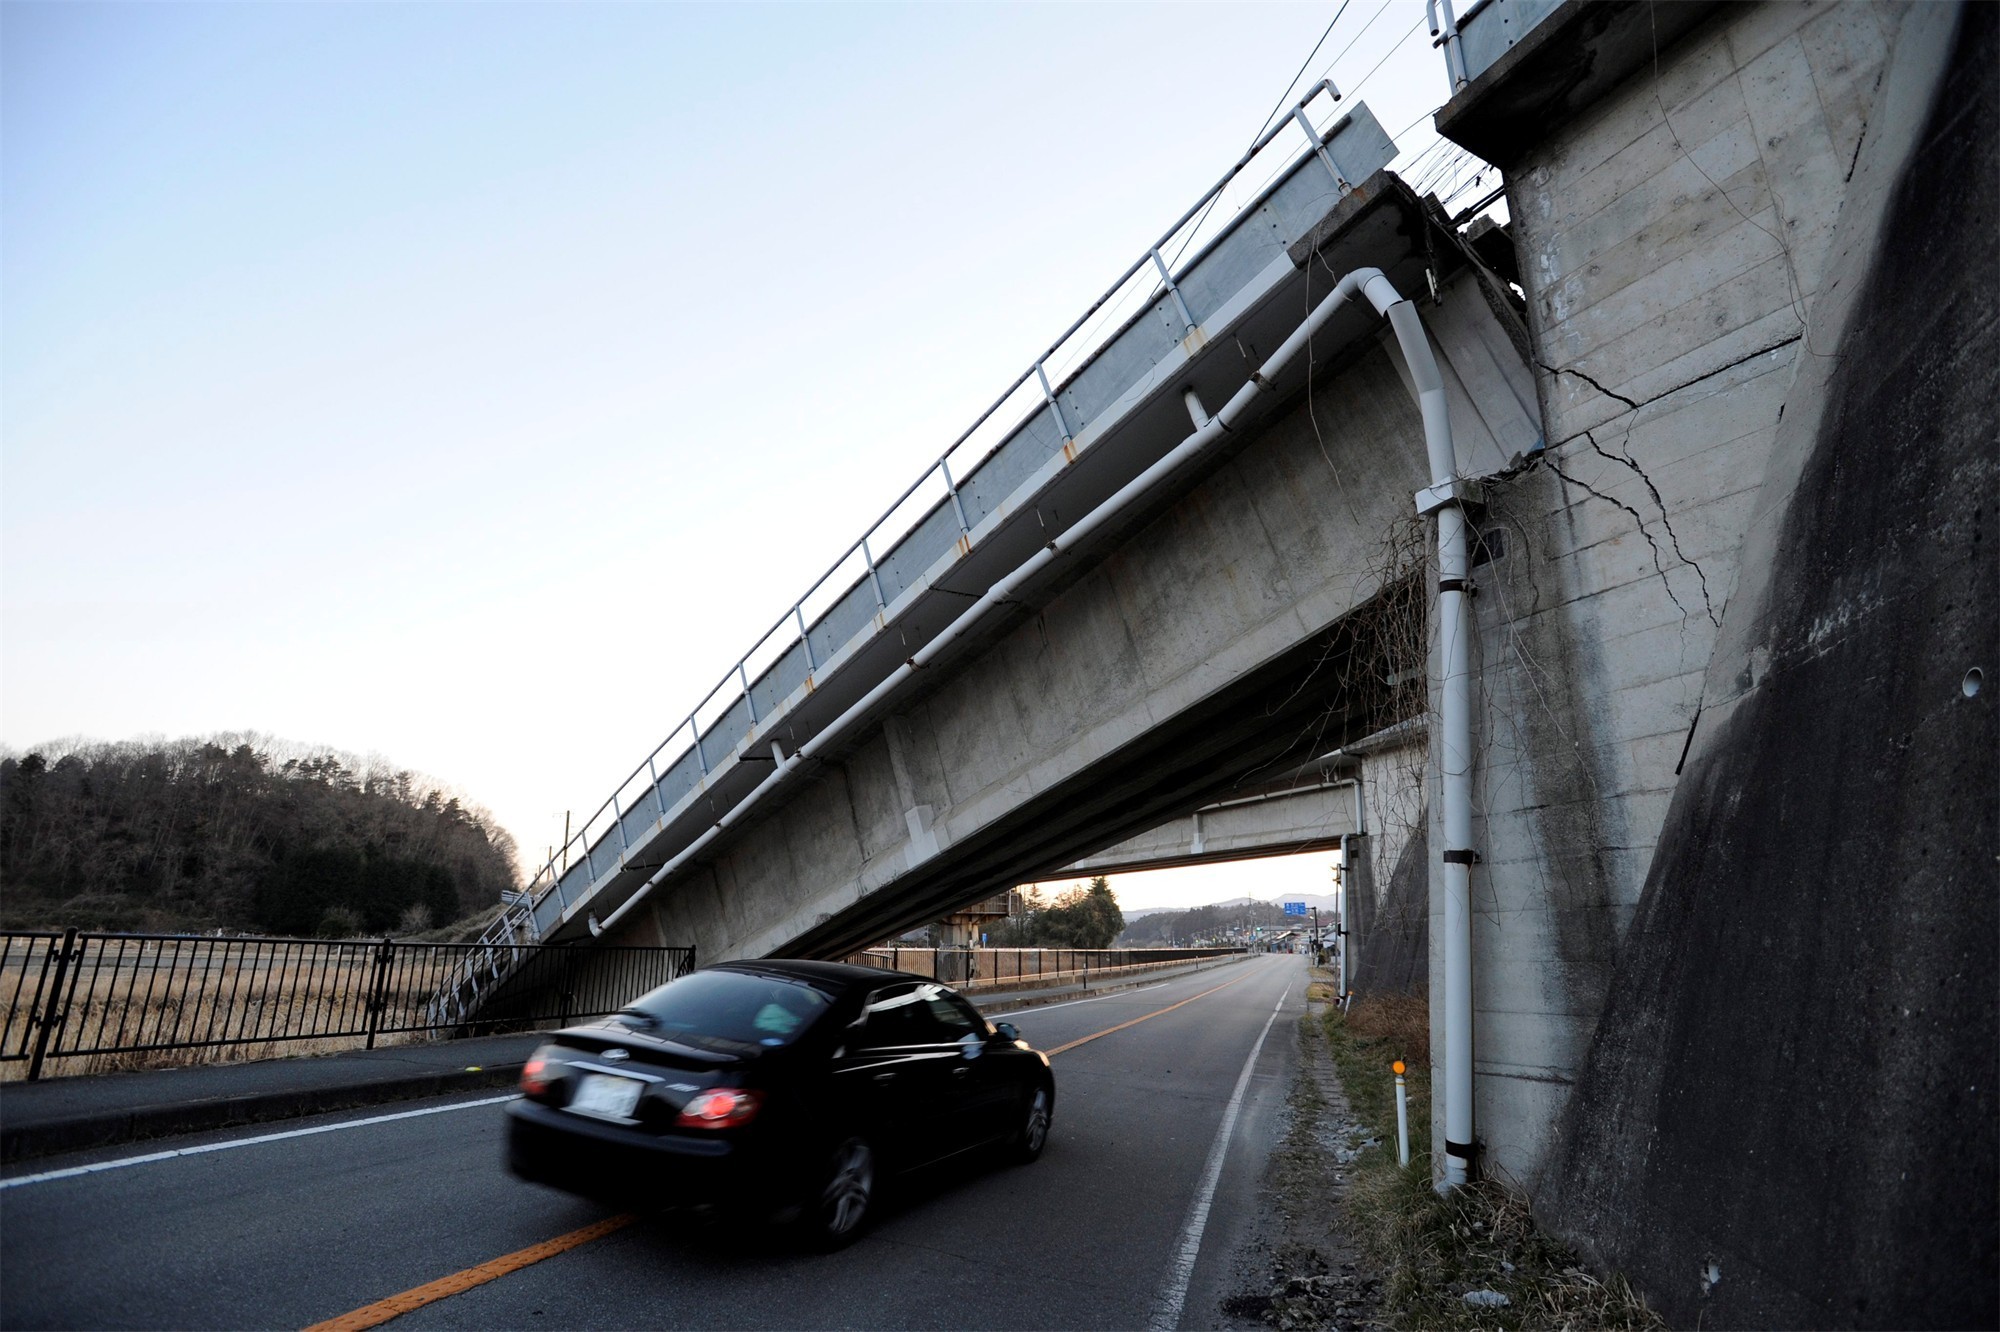 General 2000x1332 Japan earthquakes car bridge